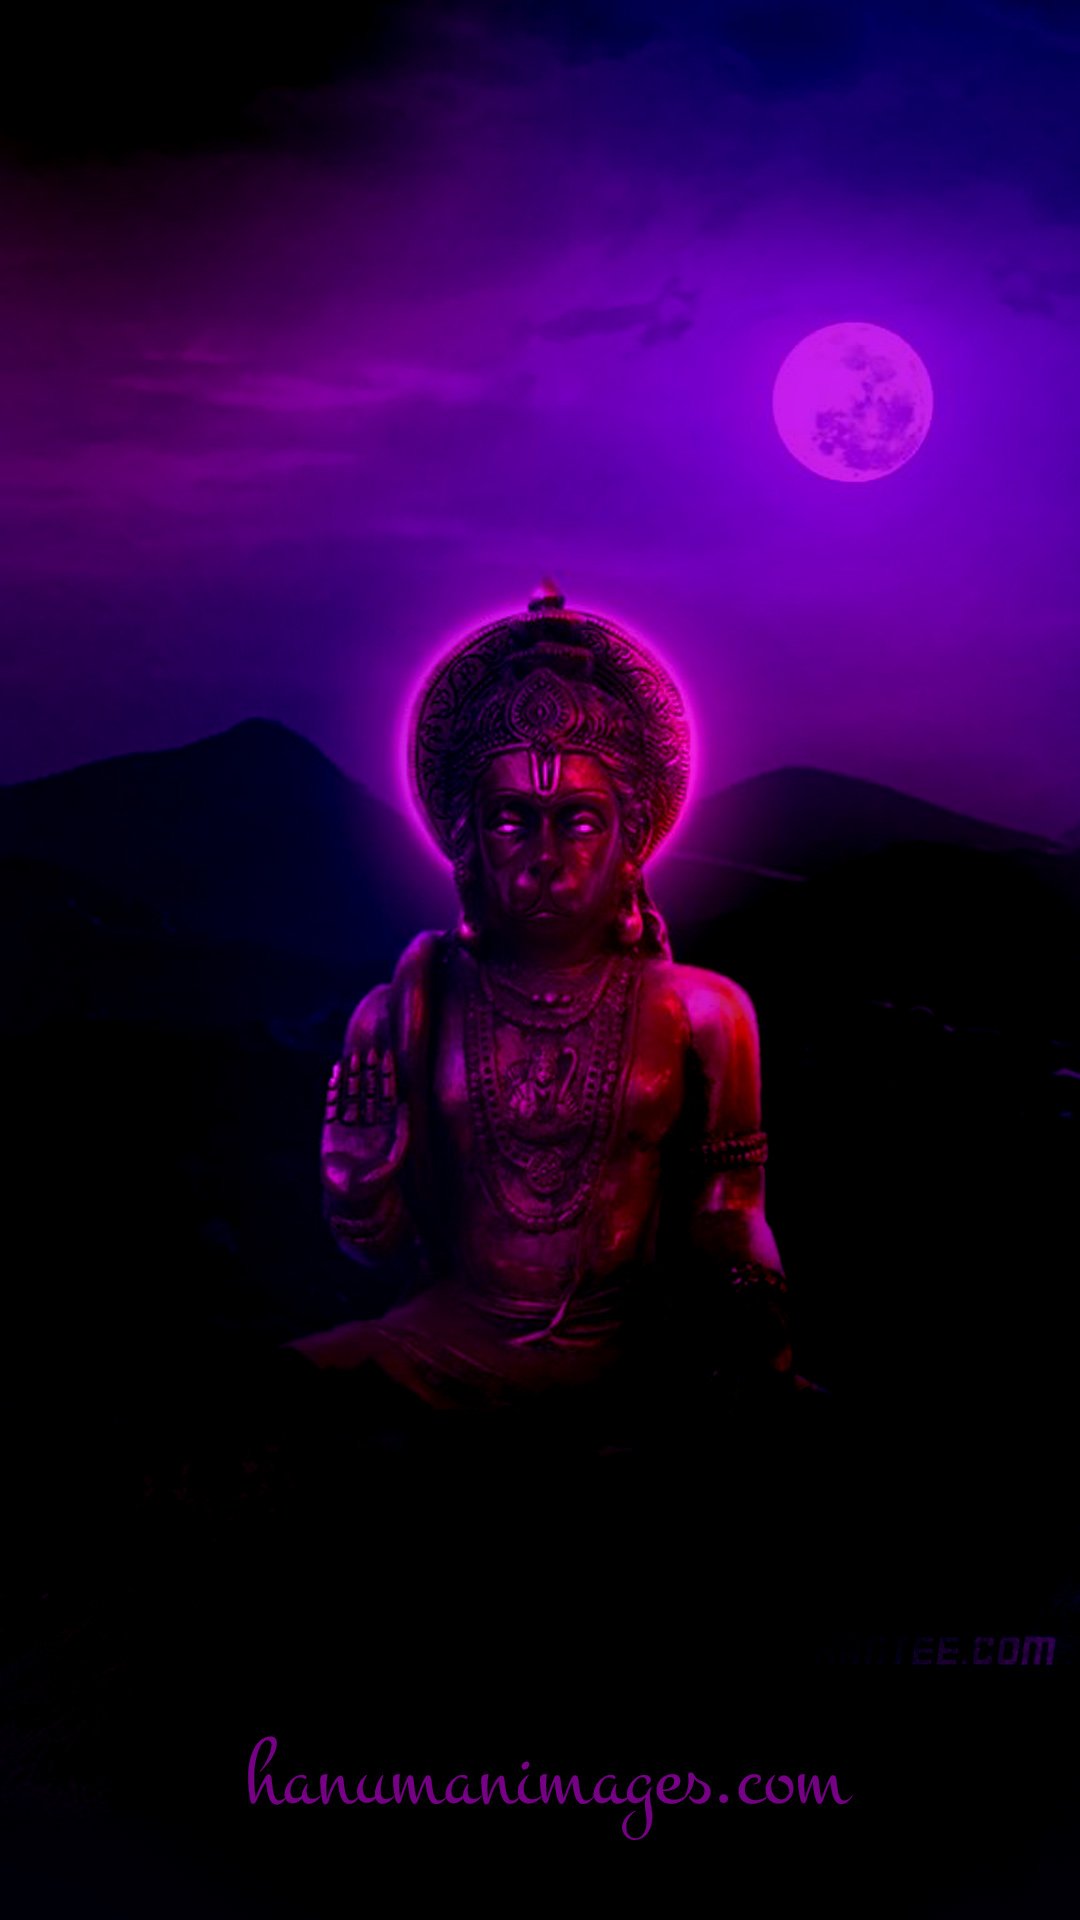 hanuman image neon purple